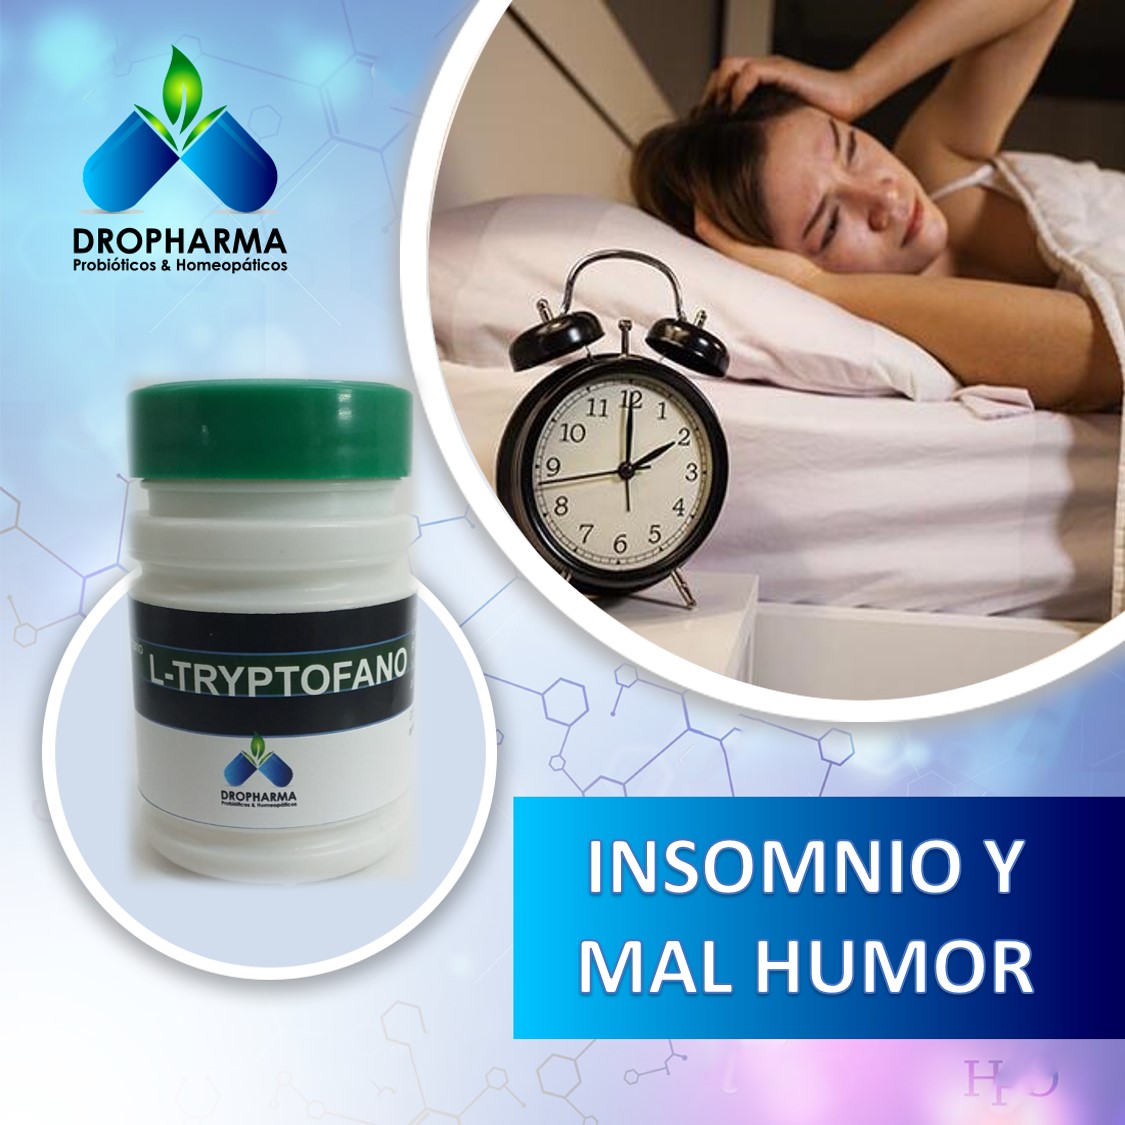 Duerme bien y mejora tu humor con el triptófano